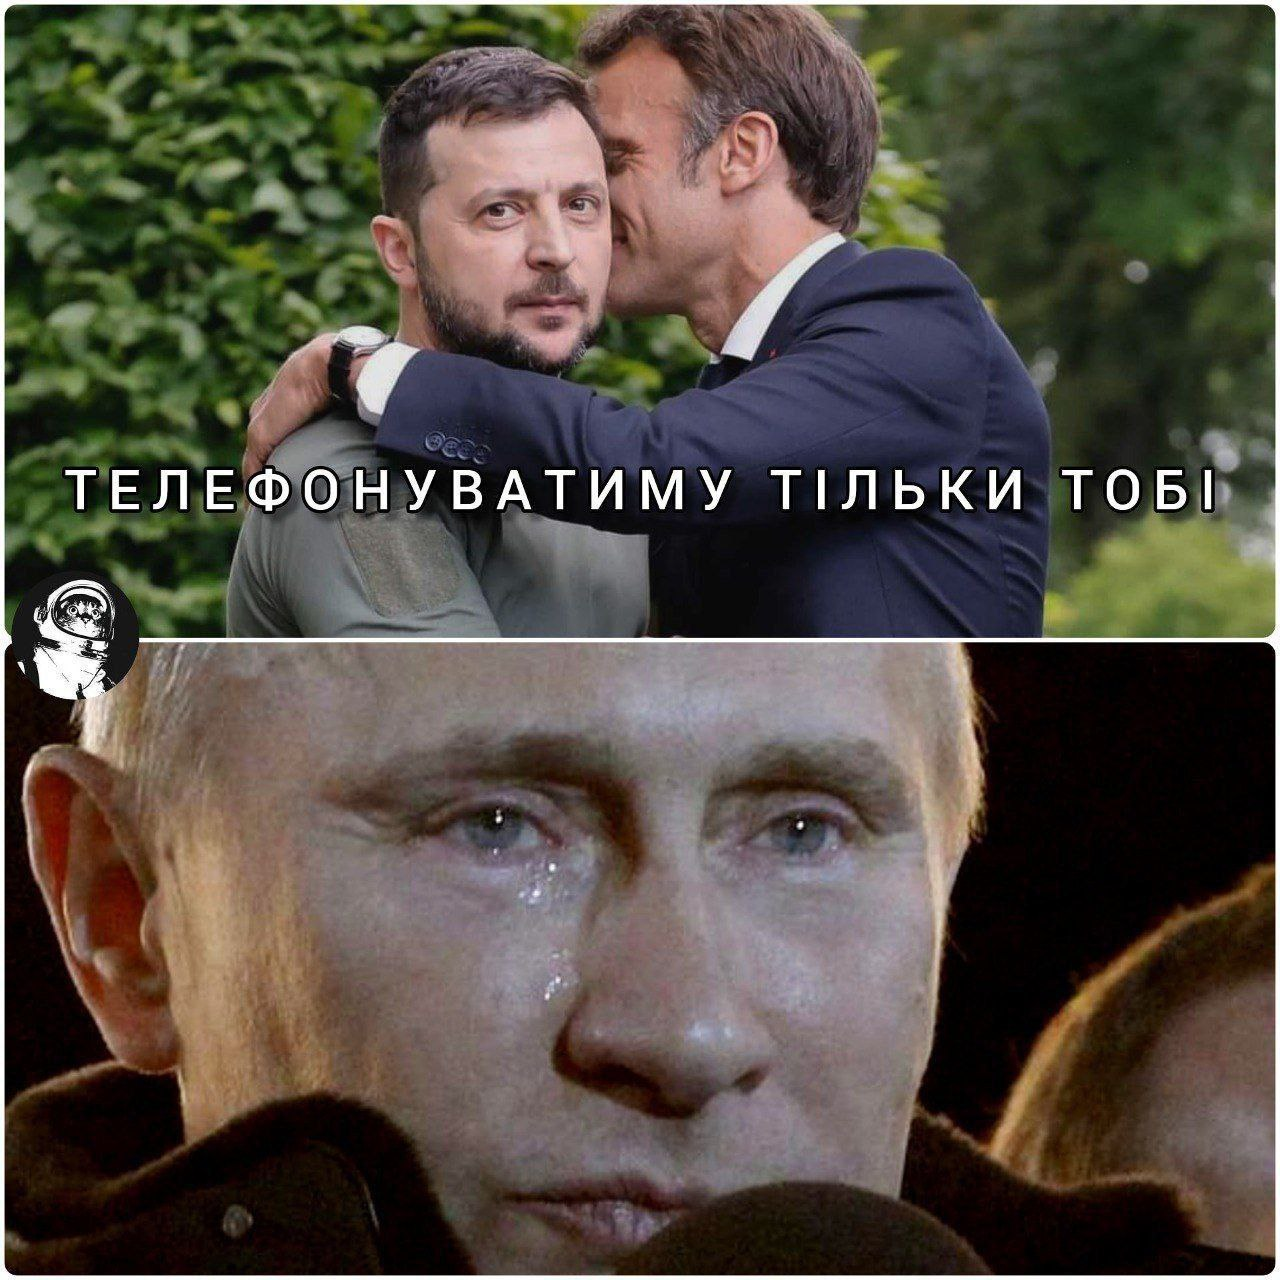 В сети появились мемы о приезде лидеров стран ЕС в Украину. || Фото: Владимир Попов